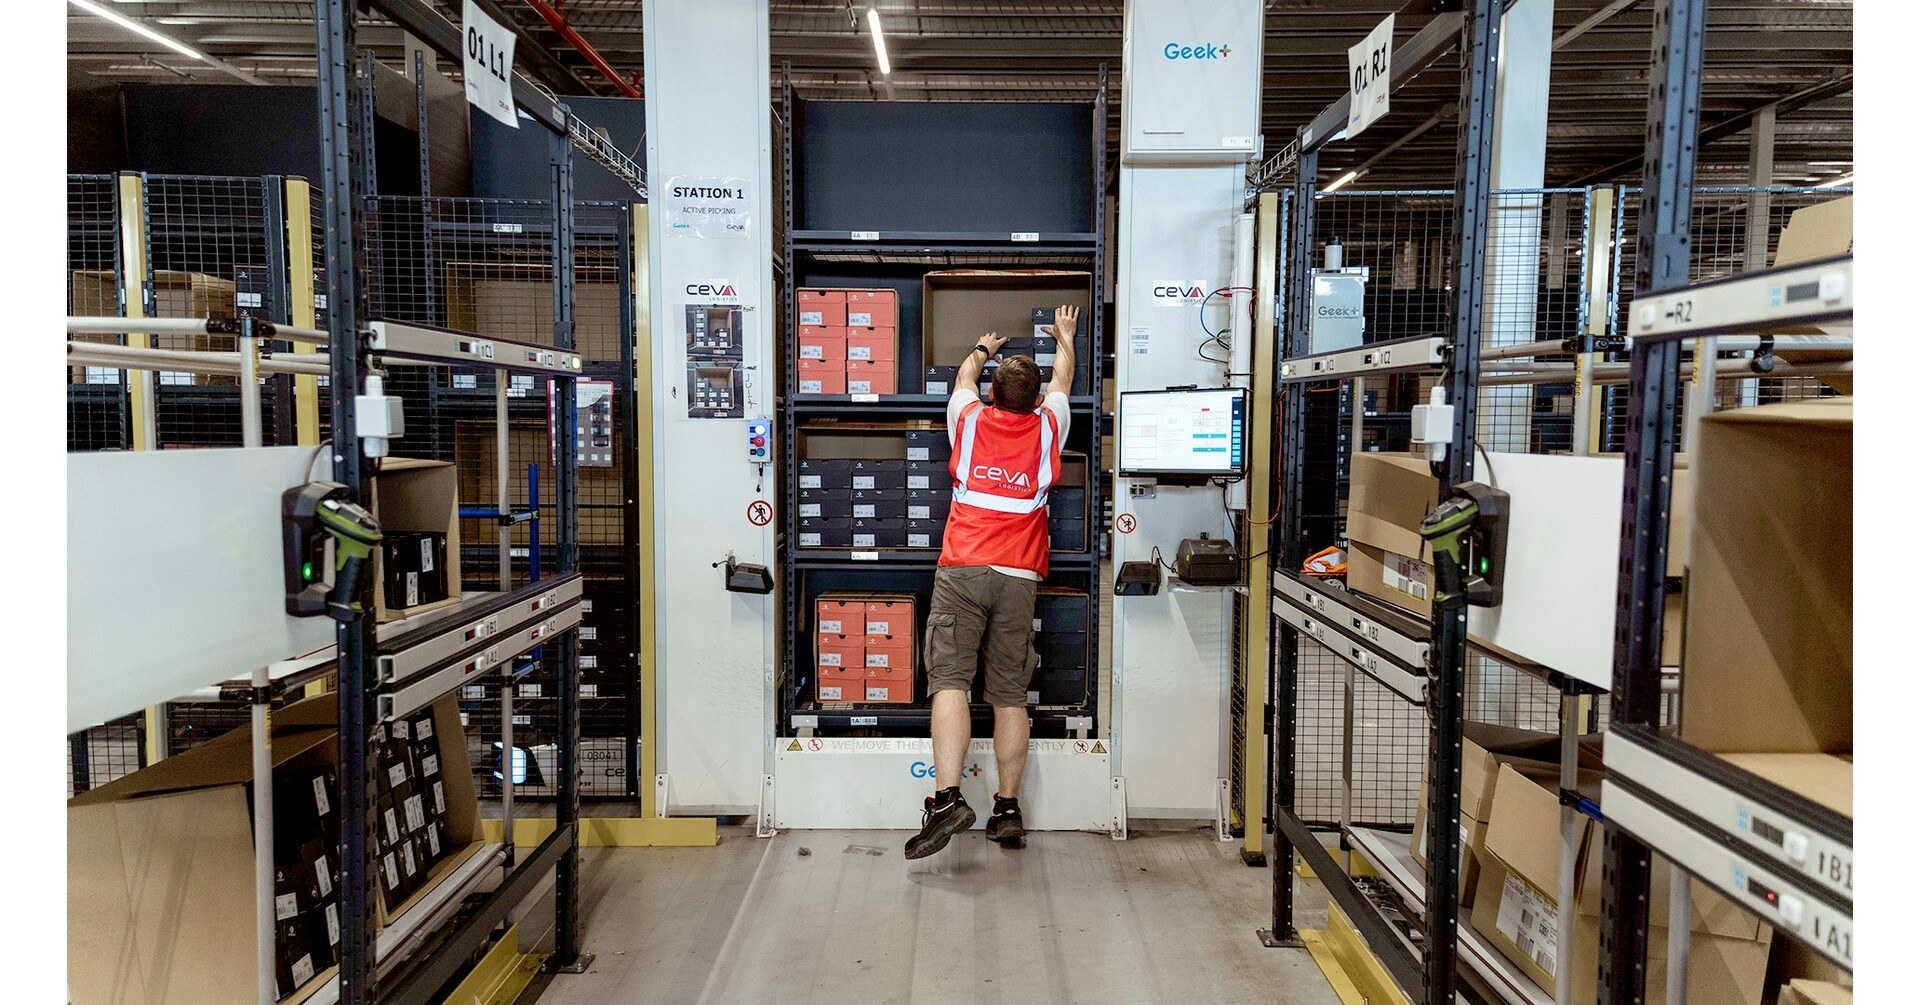 CEVA Logistics, Geek+ implementeerde een nieuwe AMR-oplossing op hun distributiesite in Grobbendonk in België